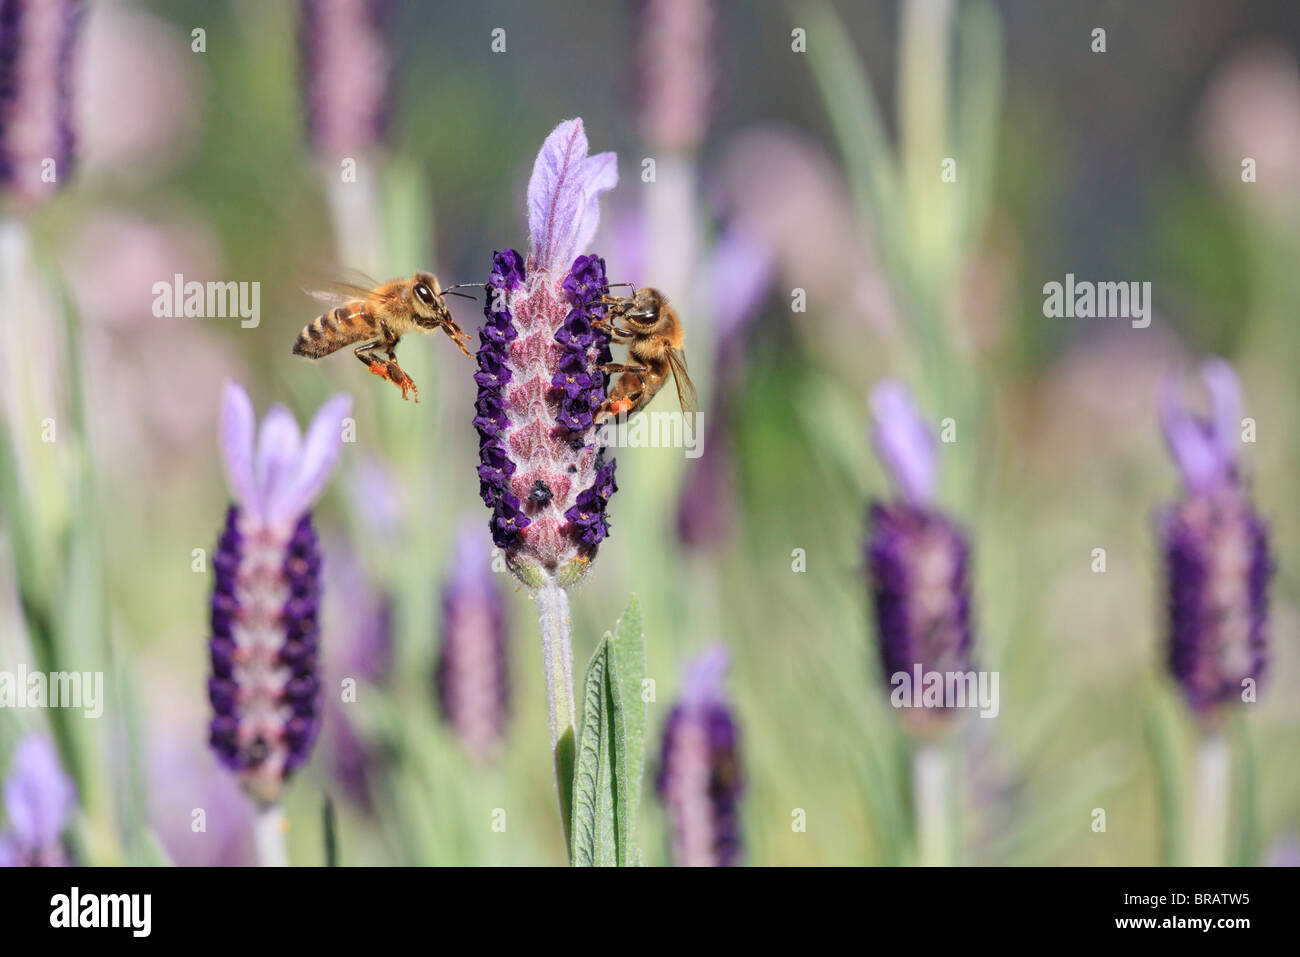 Abeille. Deux abeilles européennes ( Apis mellifera ) sur une fleur de lavande Lavandula stoechas ( ). Également connu sous le nom de l'abeille à miel. Banque D'Images